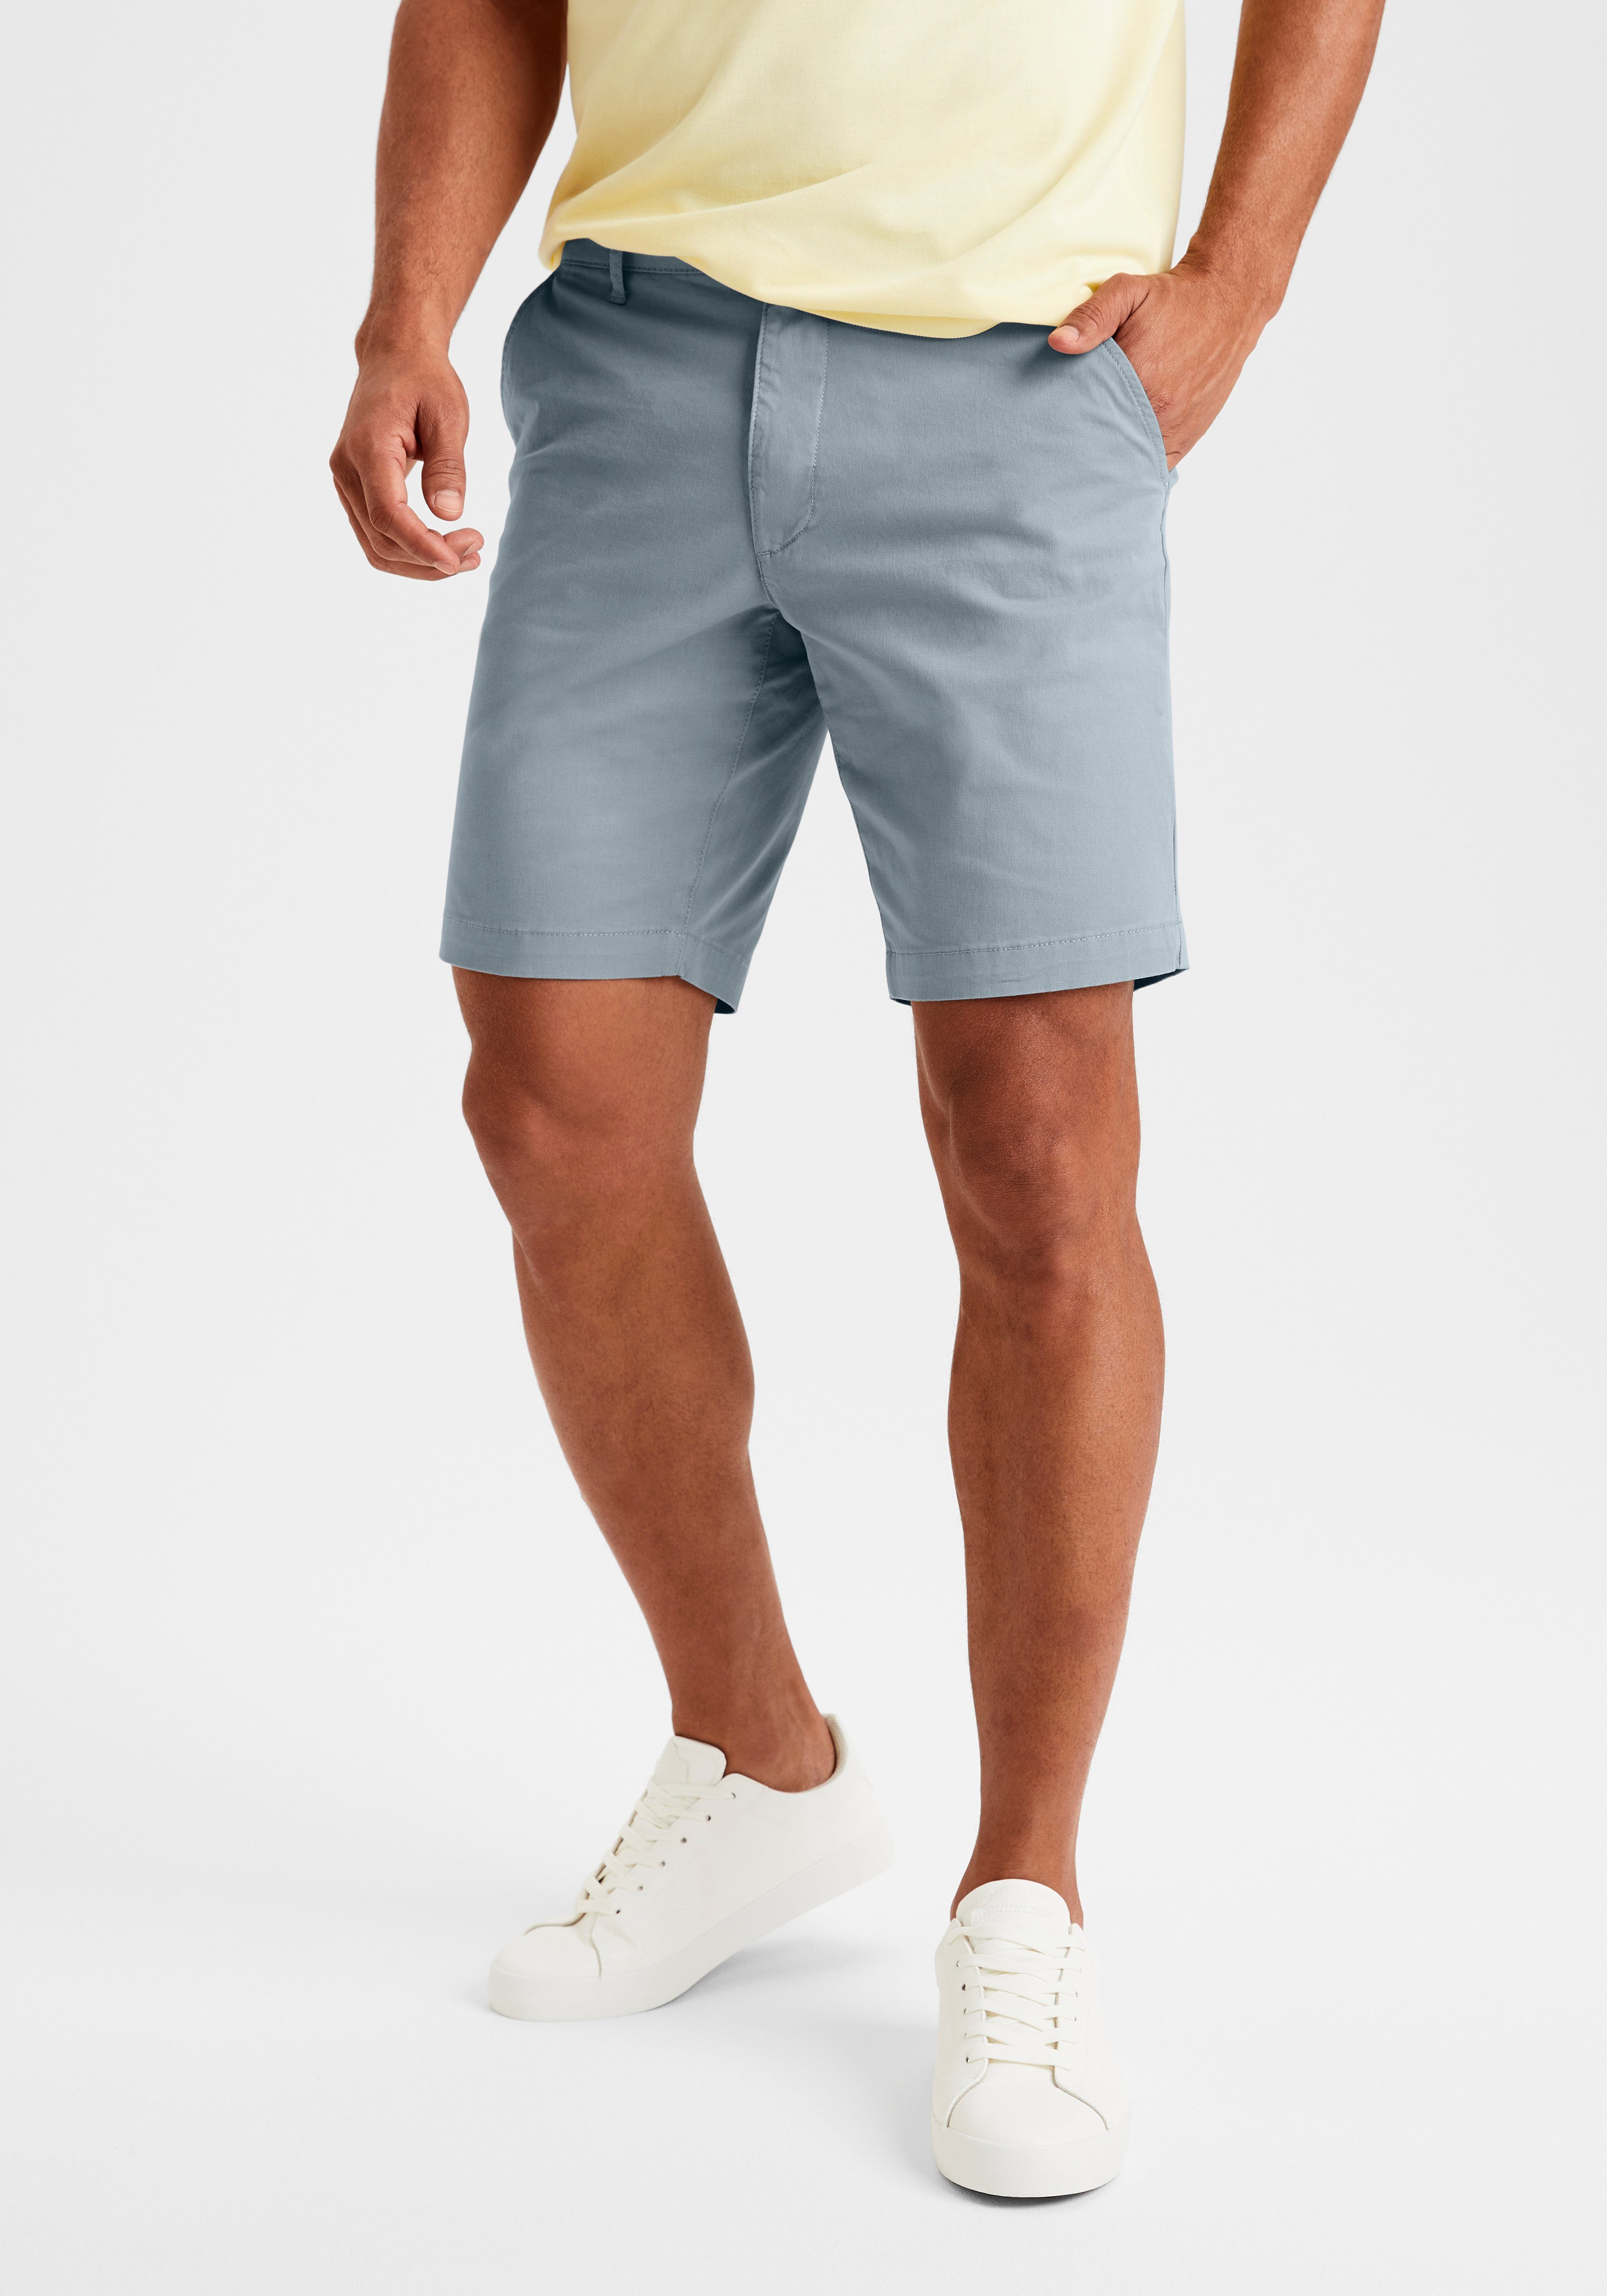 graublau Baumwoll-Qualität aus Shorts H.I.S elastischer